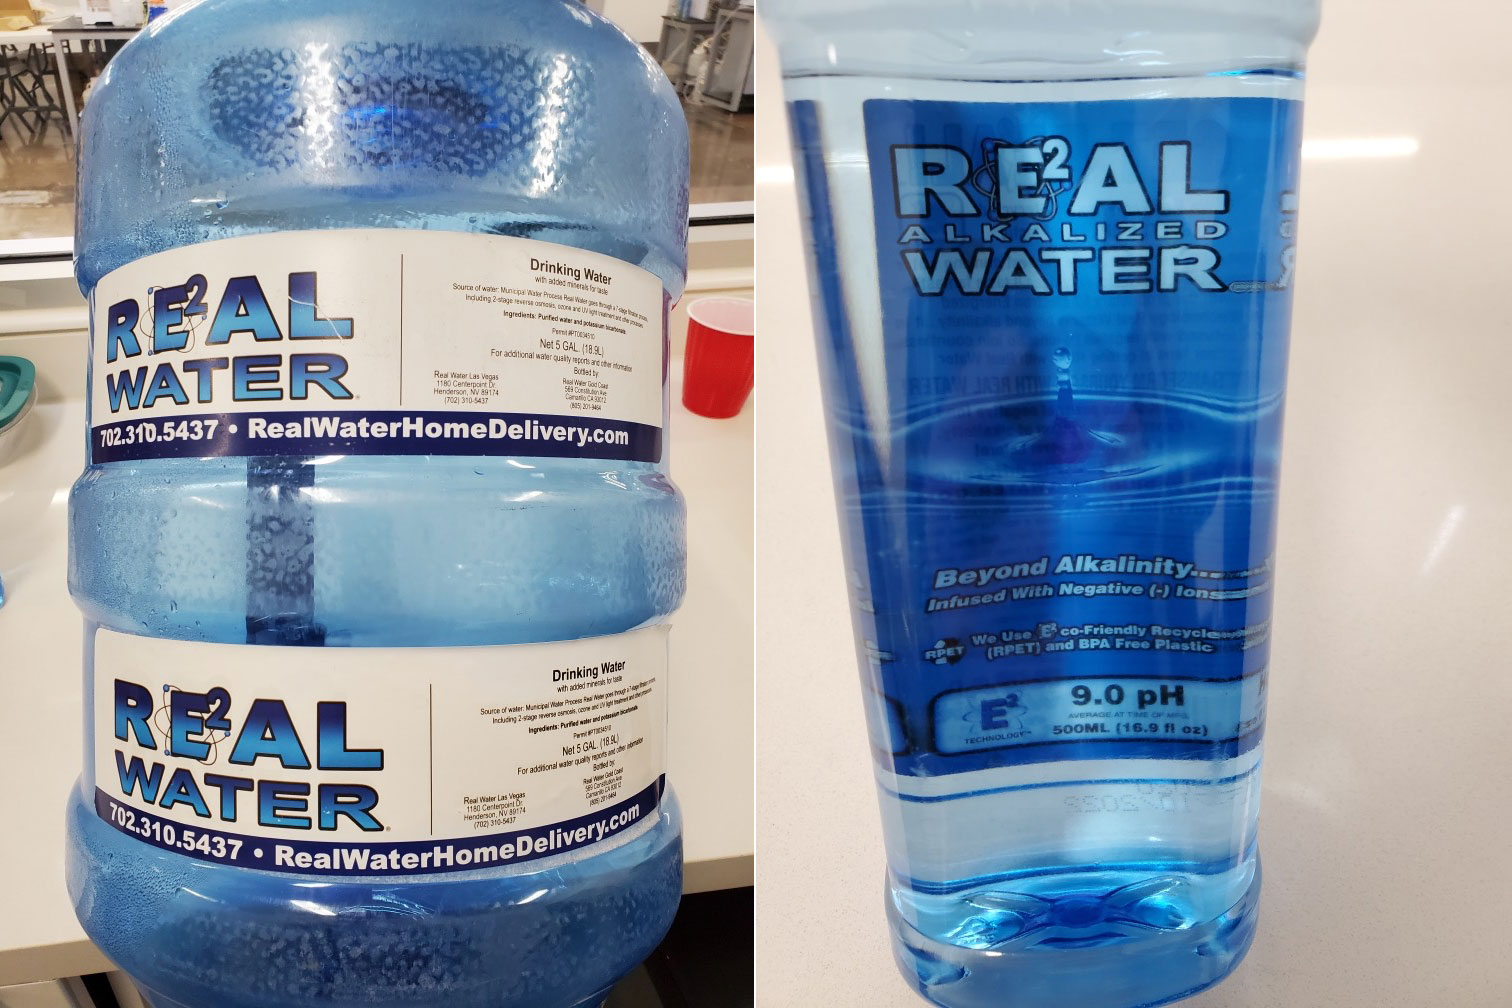 Real Water Alkaline Water in Hepatitis Alert